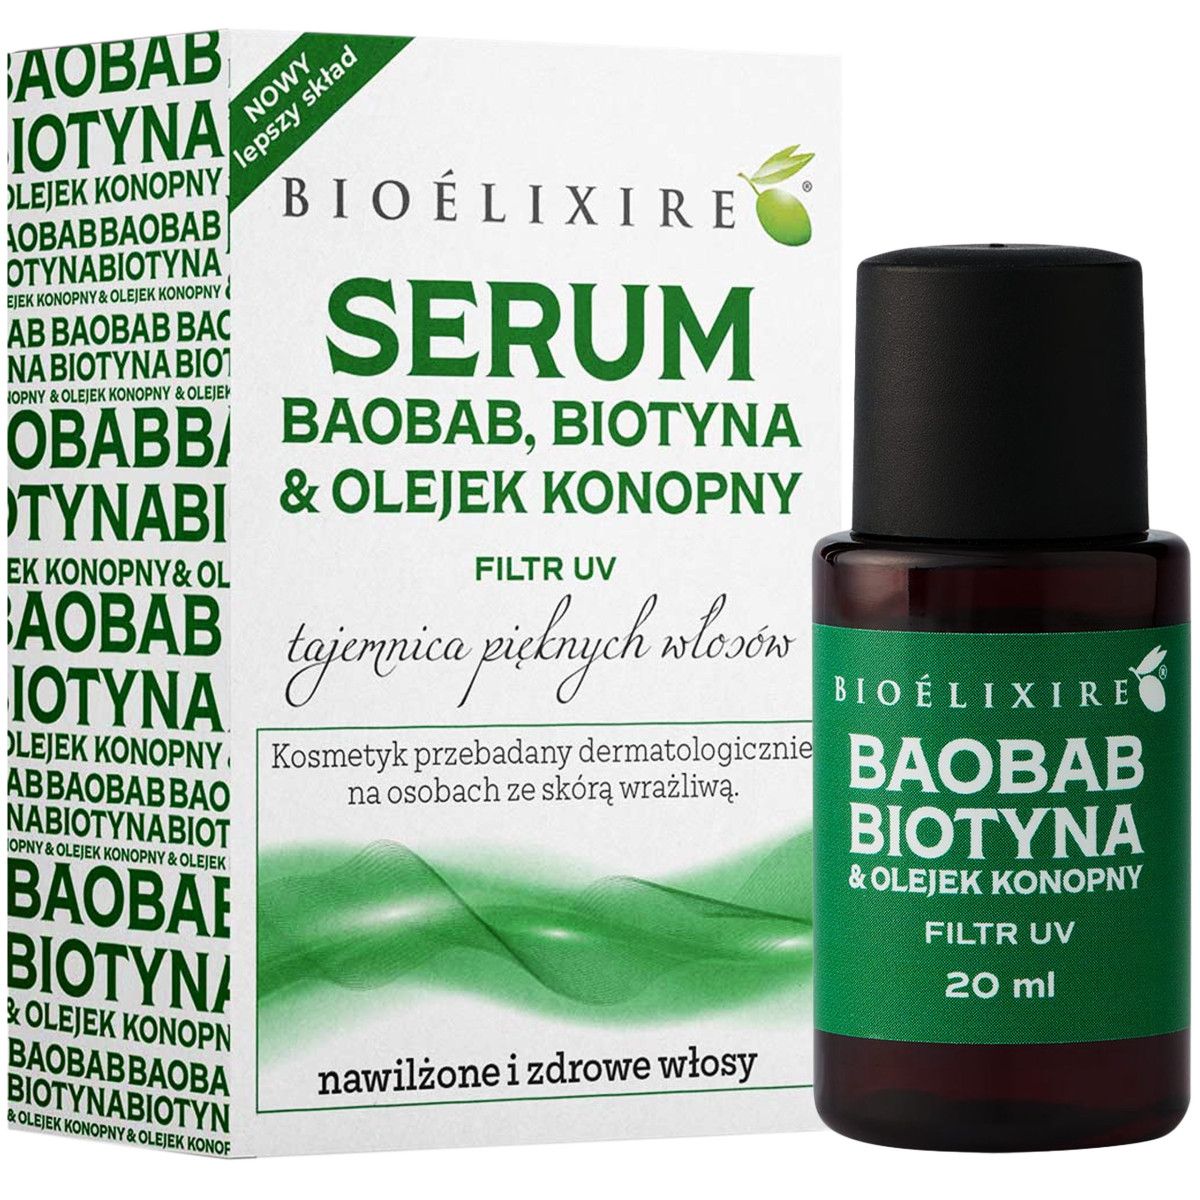 Bioelixire olejek nawilżający do włosów konopia & baobab 20 ml